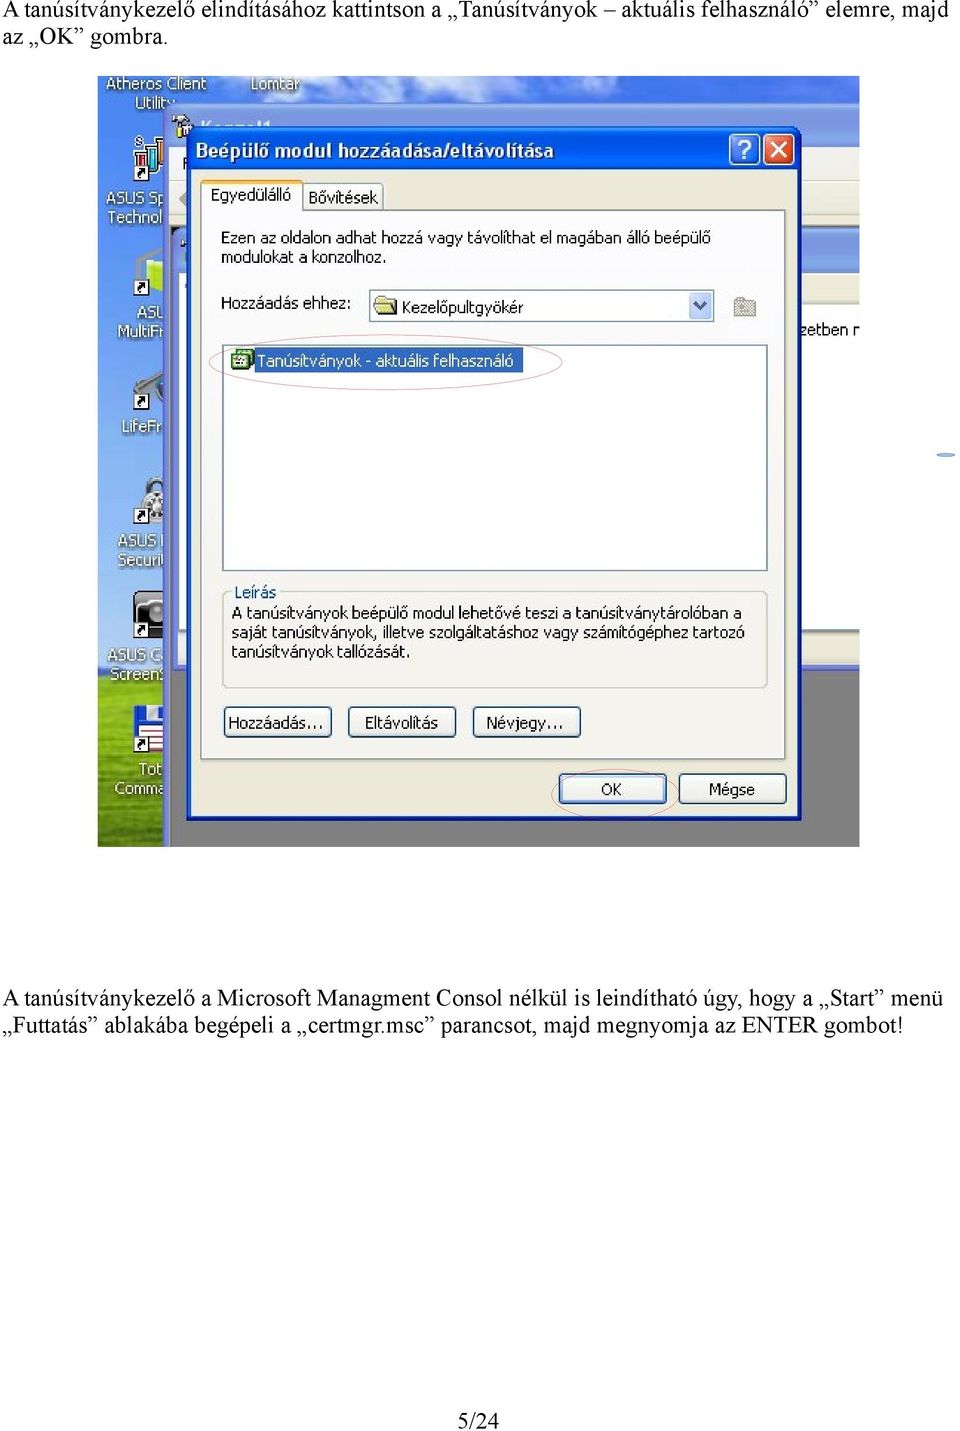 A tanúsítványkezelő a Microsoft Managment Consol nélkül is leindítható